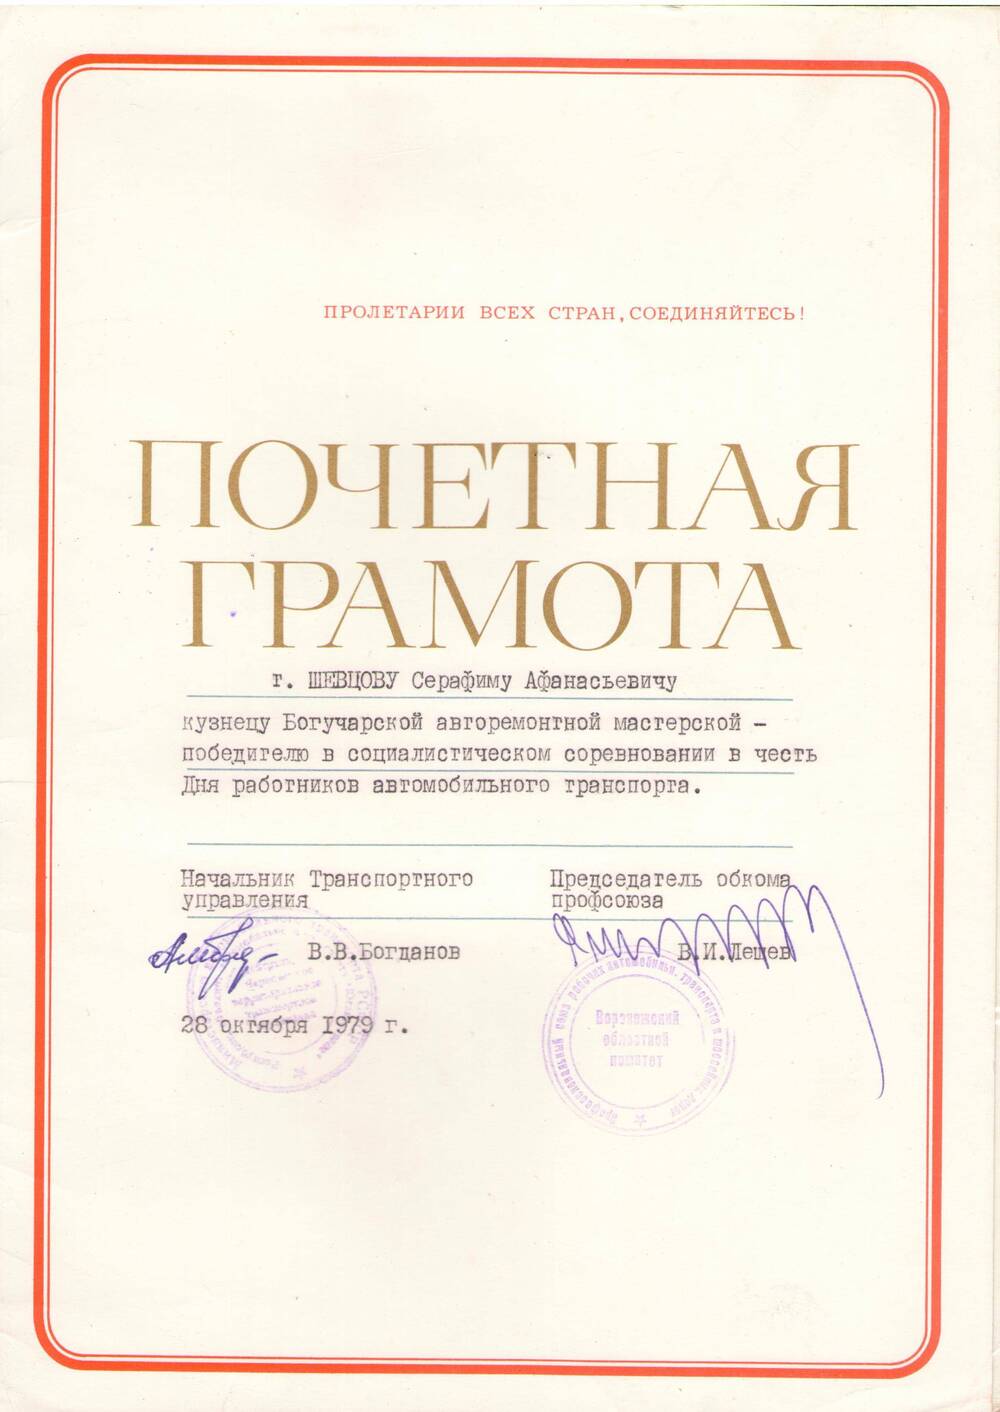 Почетная грамота Шевцову Серафиму Афанасьевичу  в честь дня автомобилиста. 28 октября 1979 г.